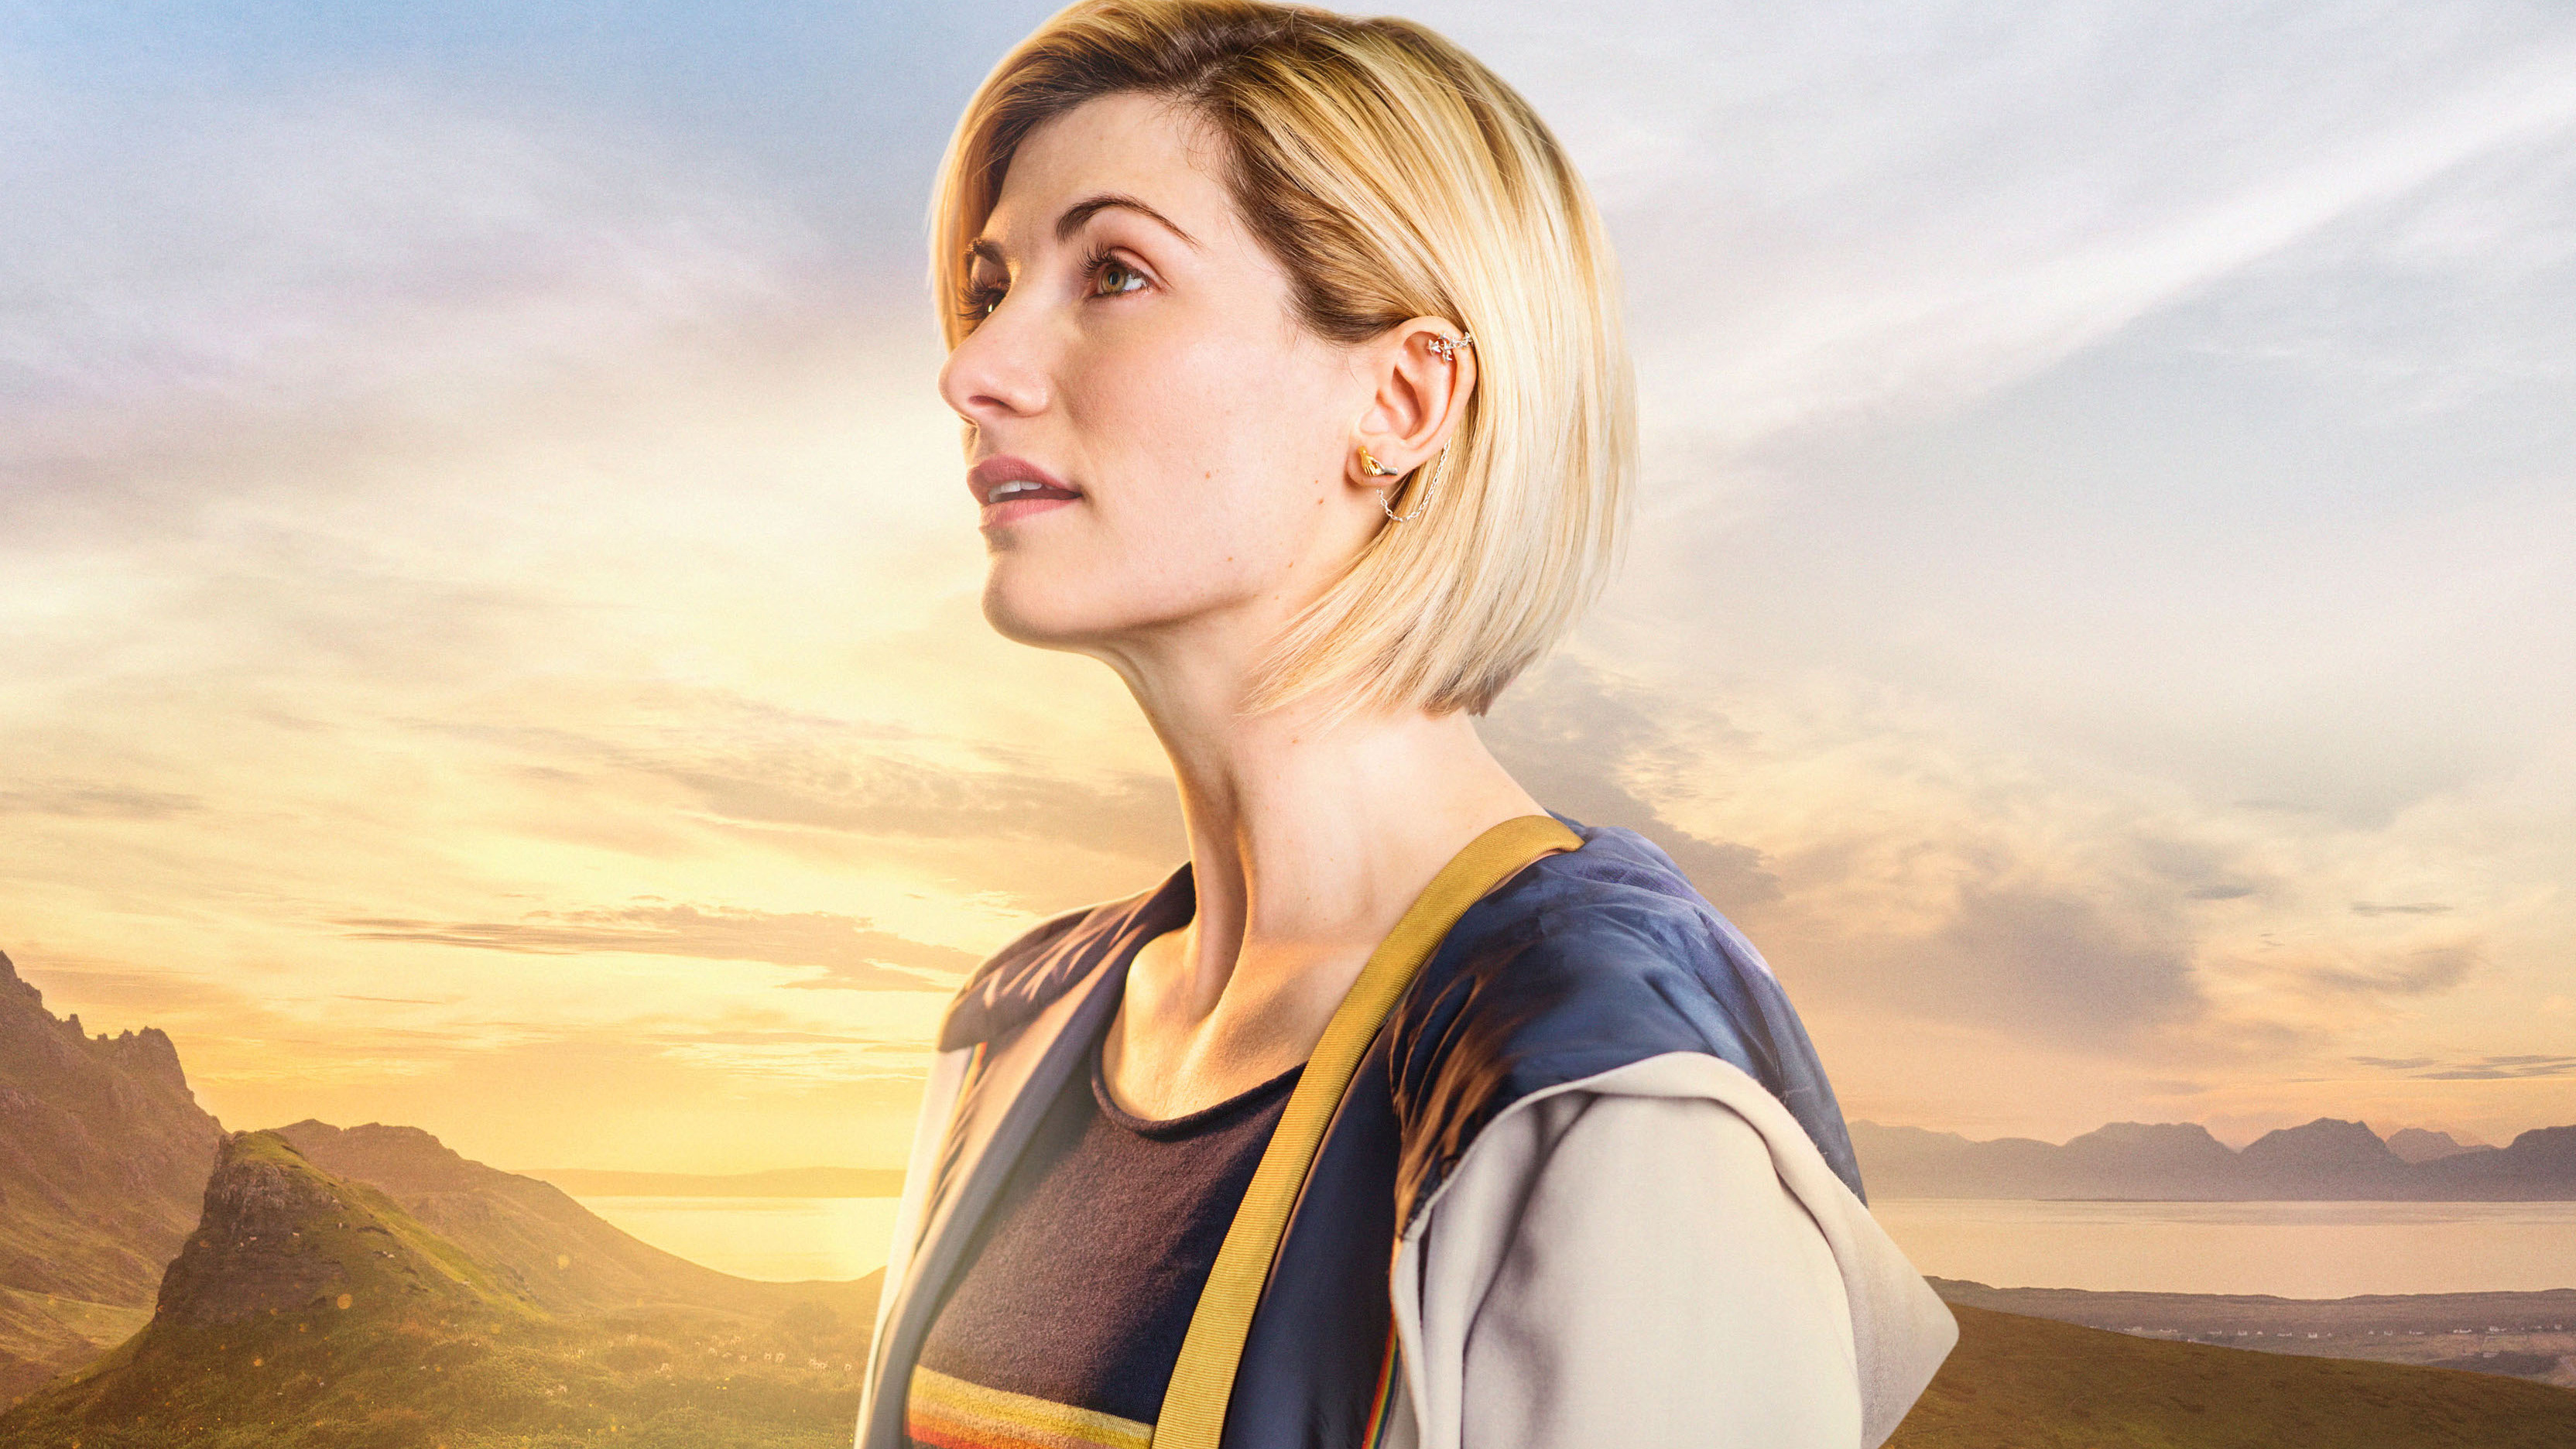 Jodie Whittaker In Doctor Who Season 11 Wallpapers - 13th Doctor Jodie Whittaker - HD Wallpaper 